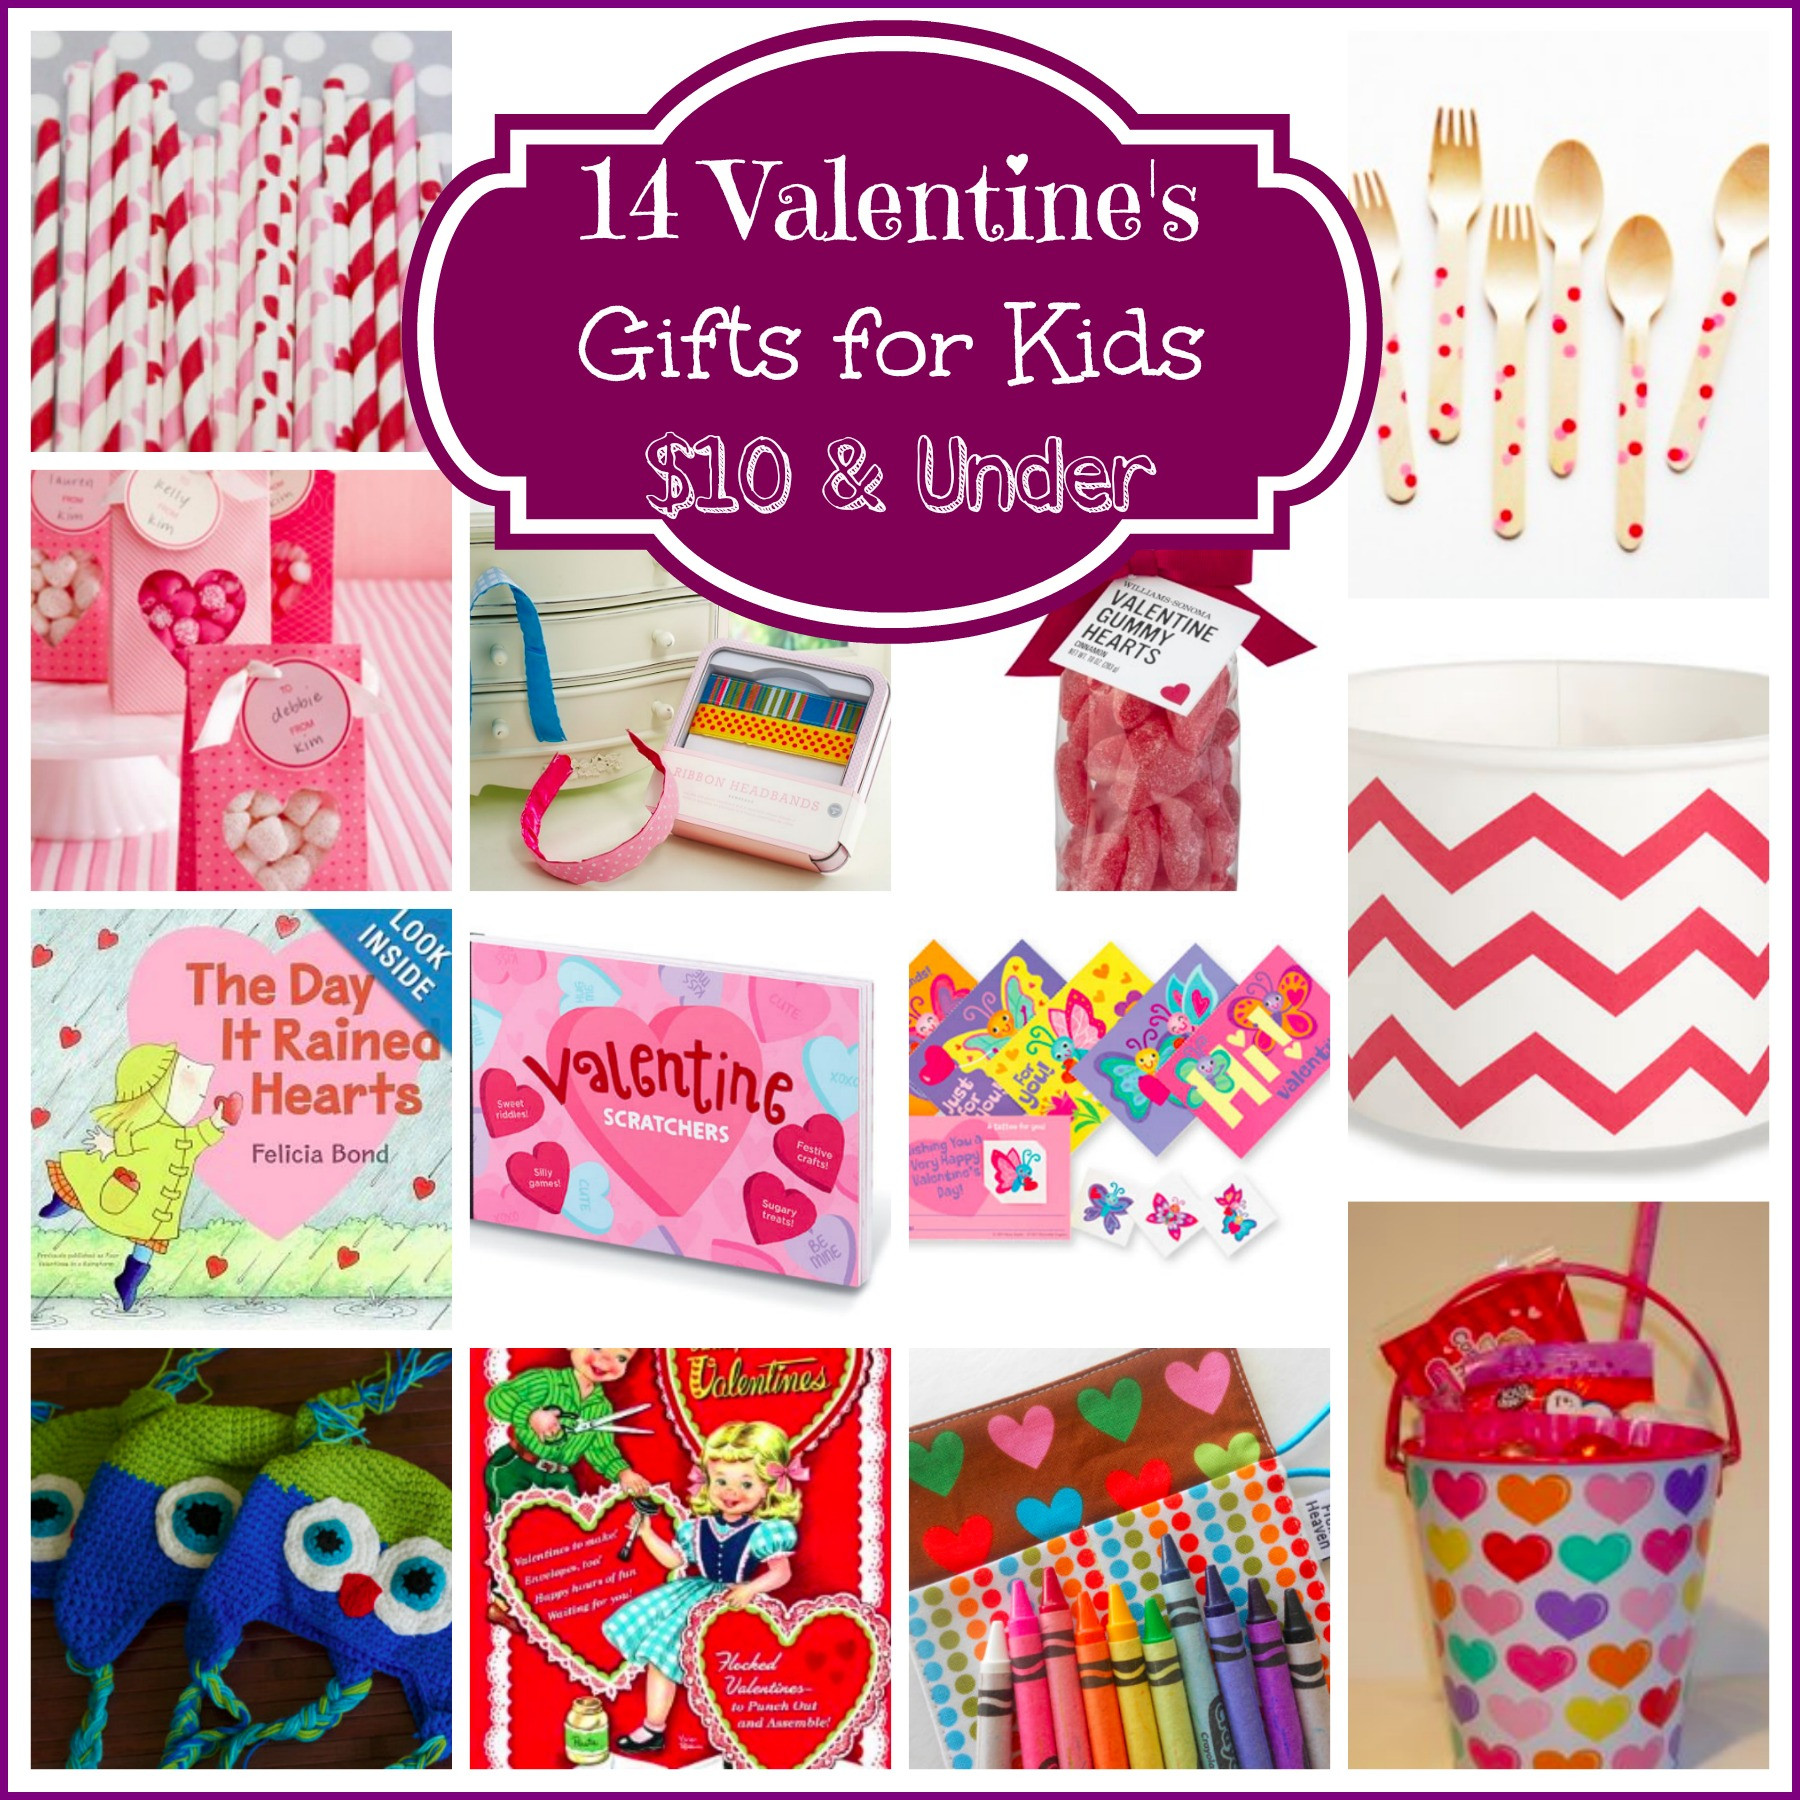 Childrens Valentines Gift Ideas
 14 Valentine’s Day Gifts for Kids $10 & Under